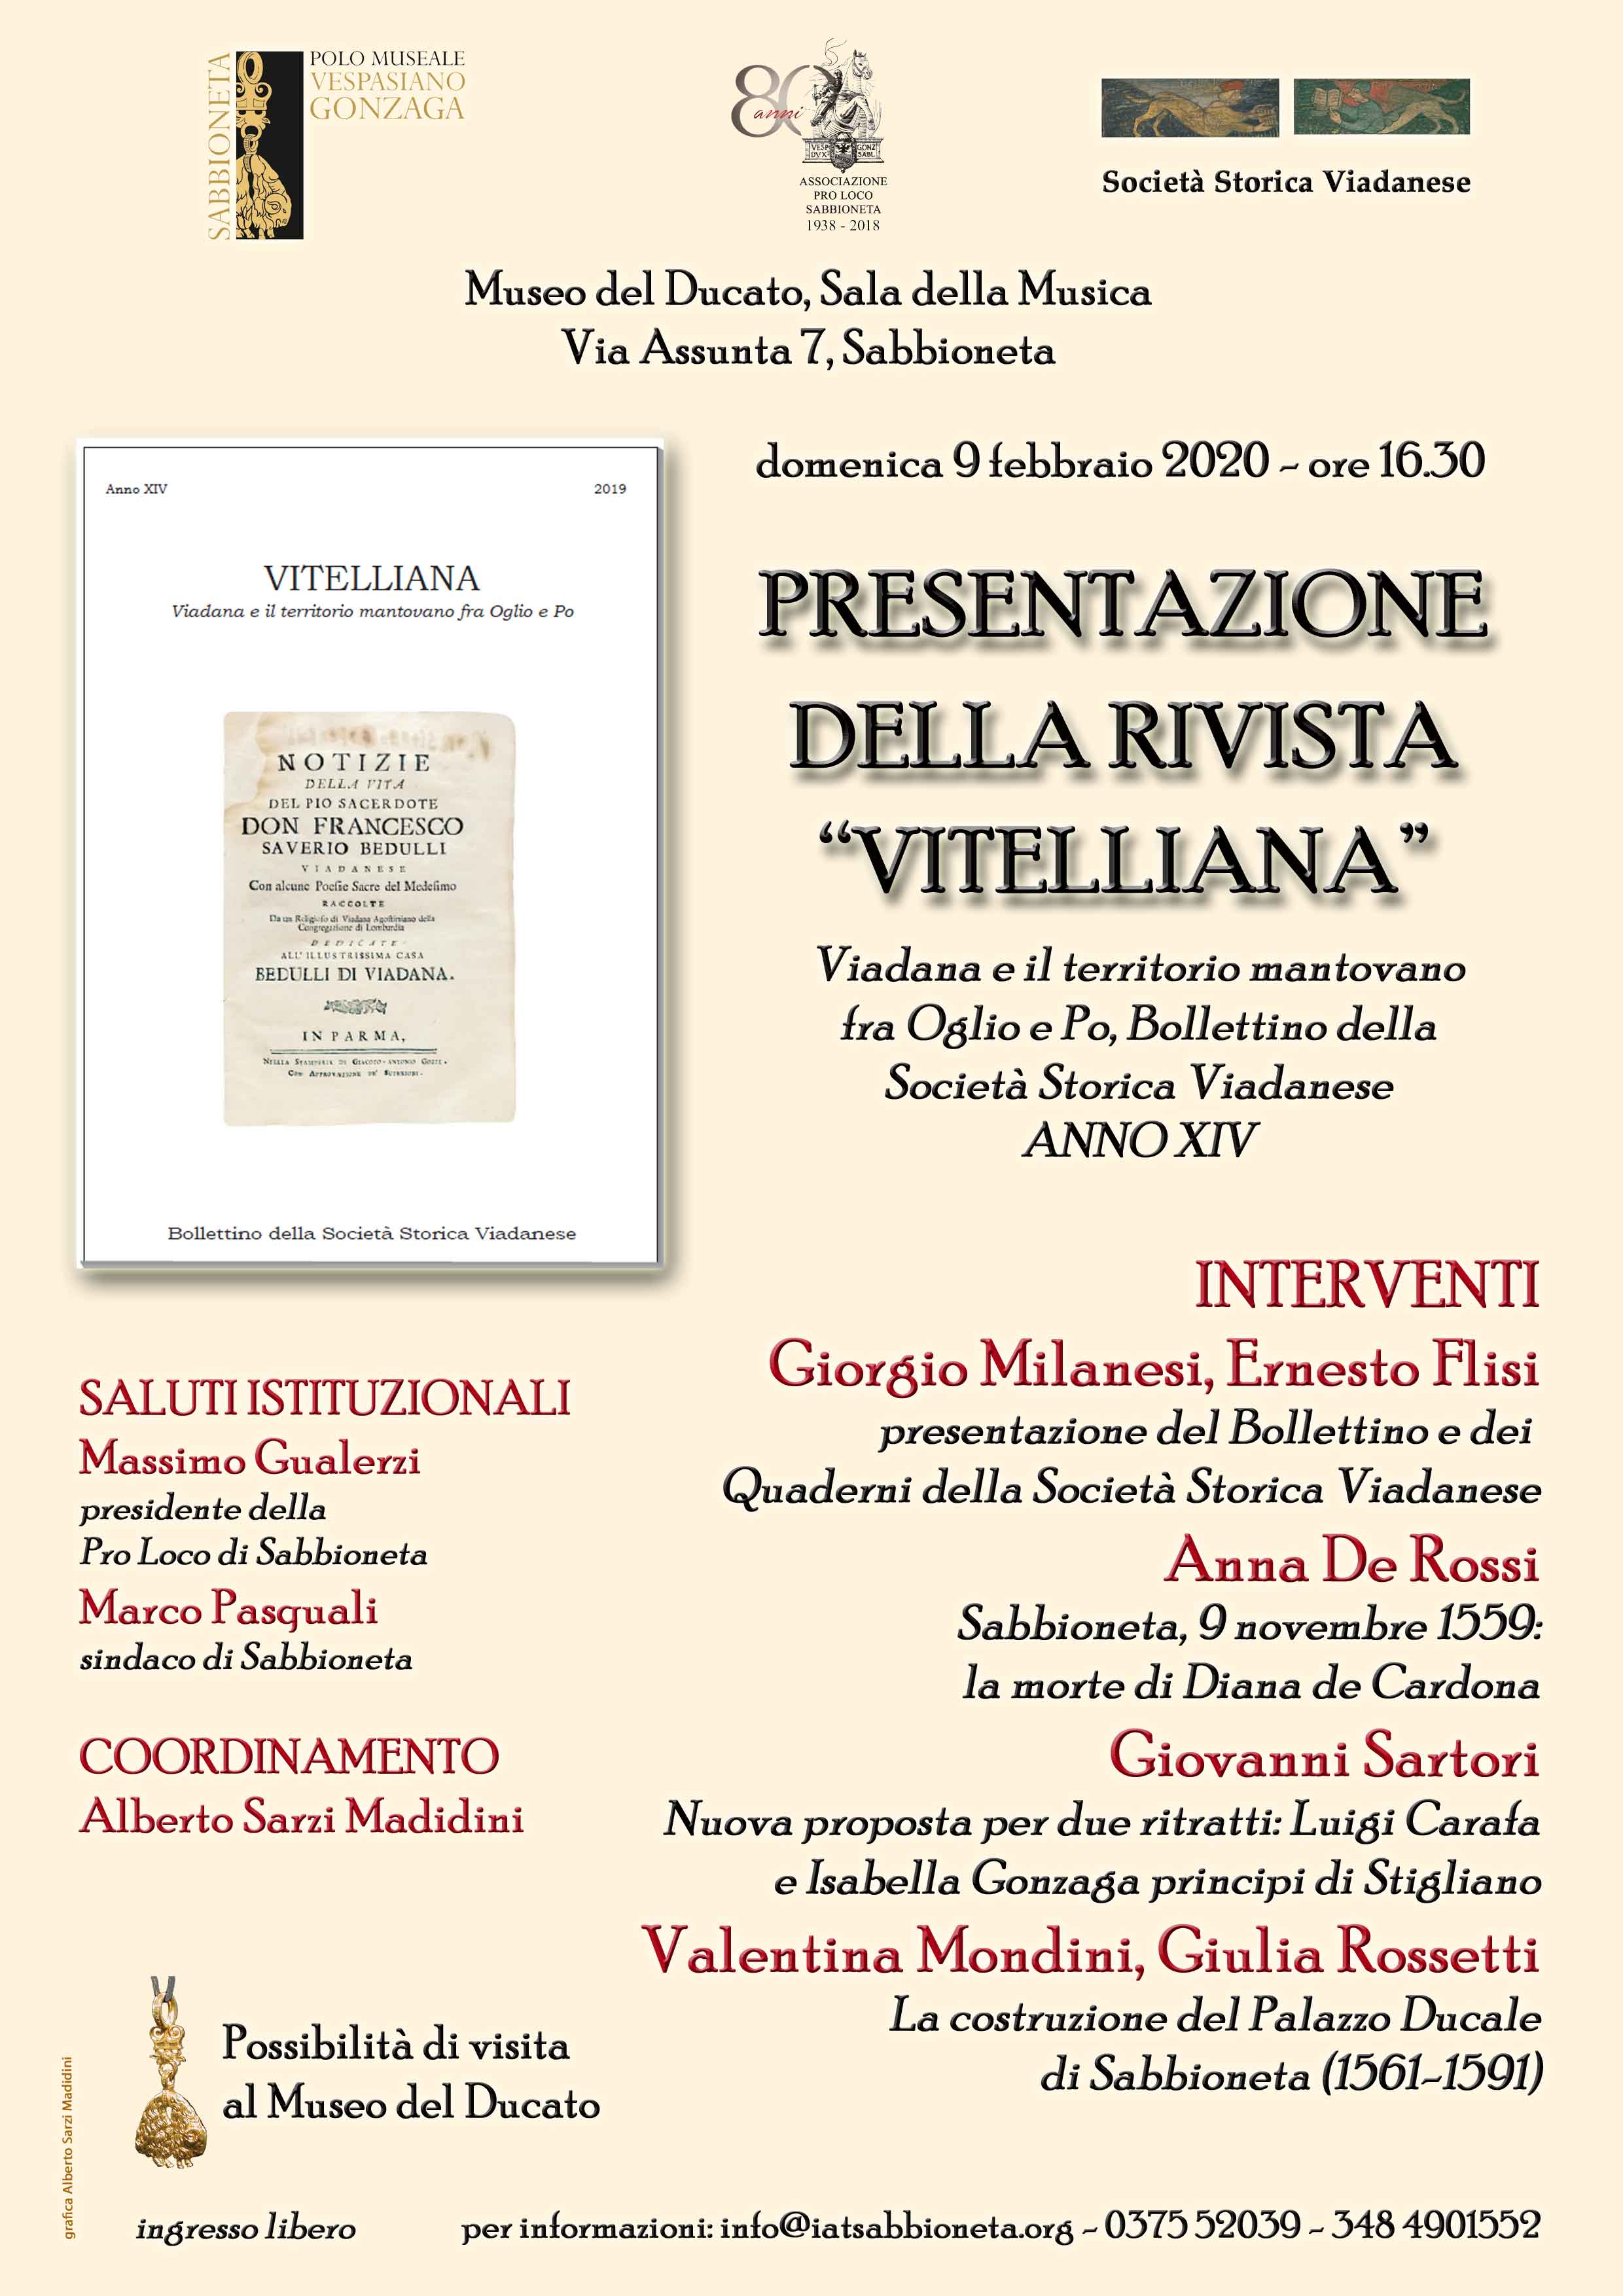 9 Febbraio 2020 Presentazione della rivista "Vitelliana"